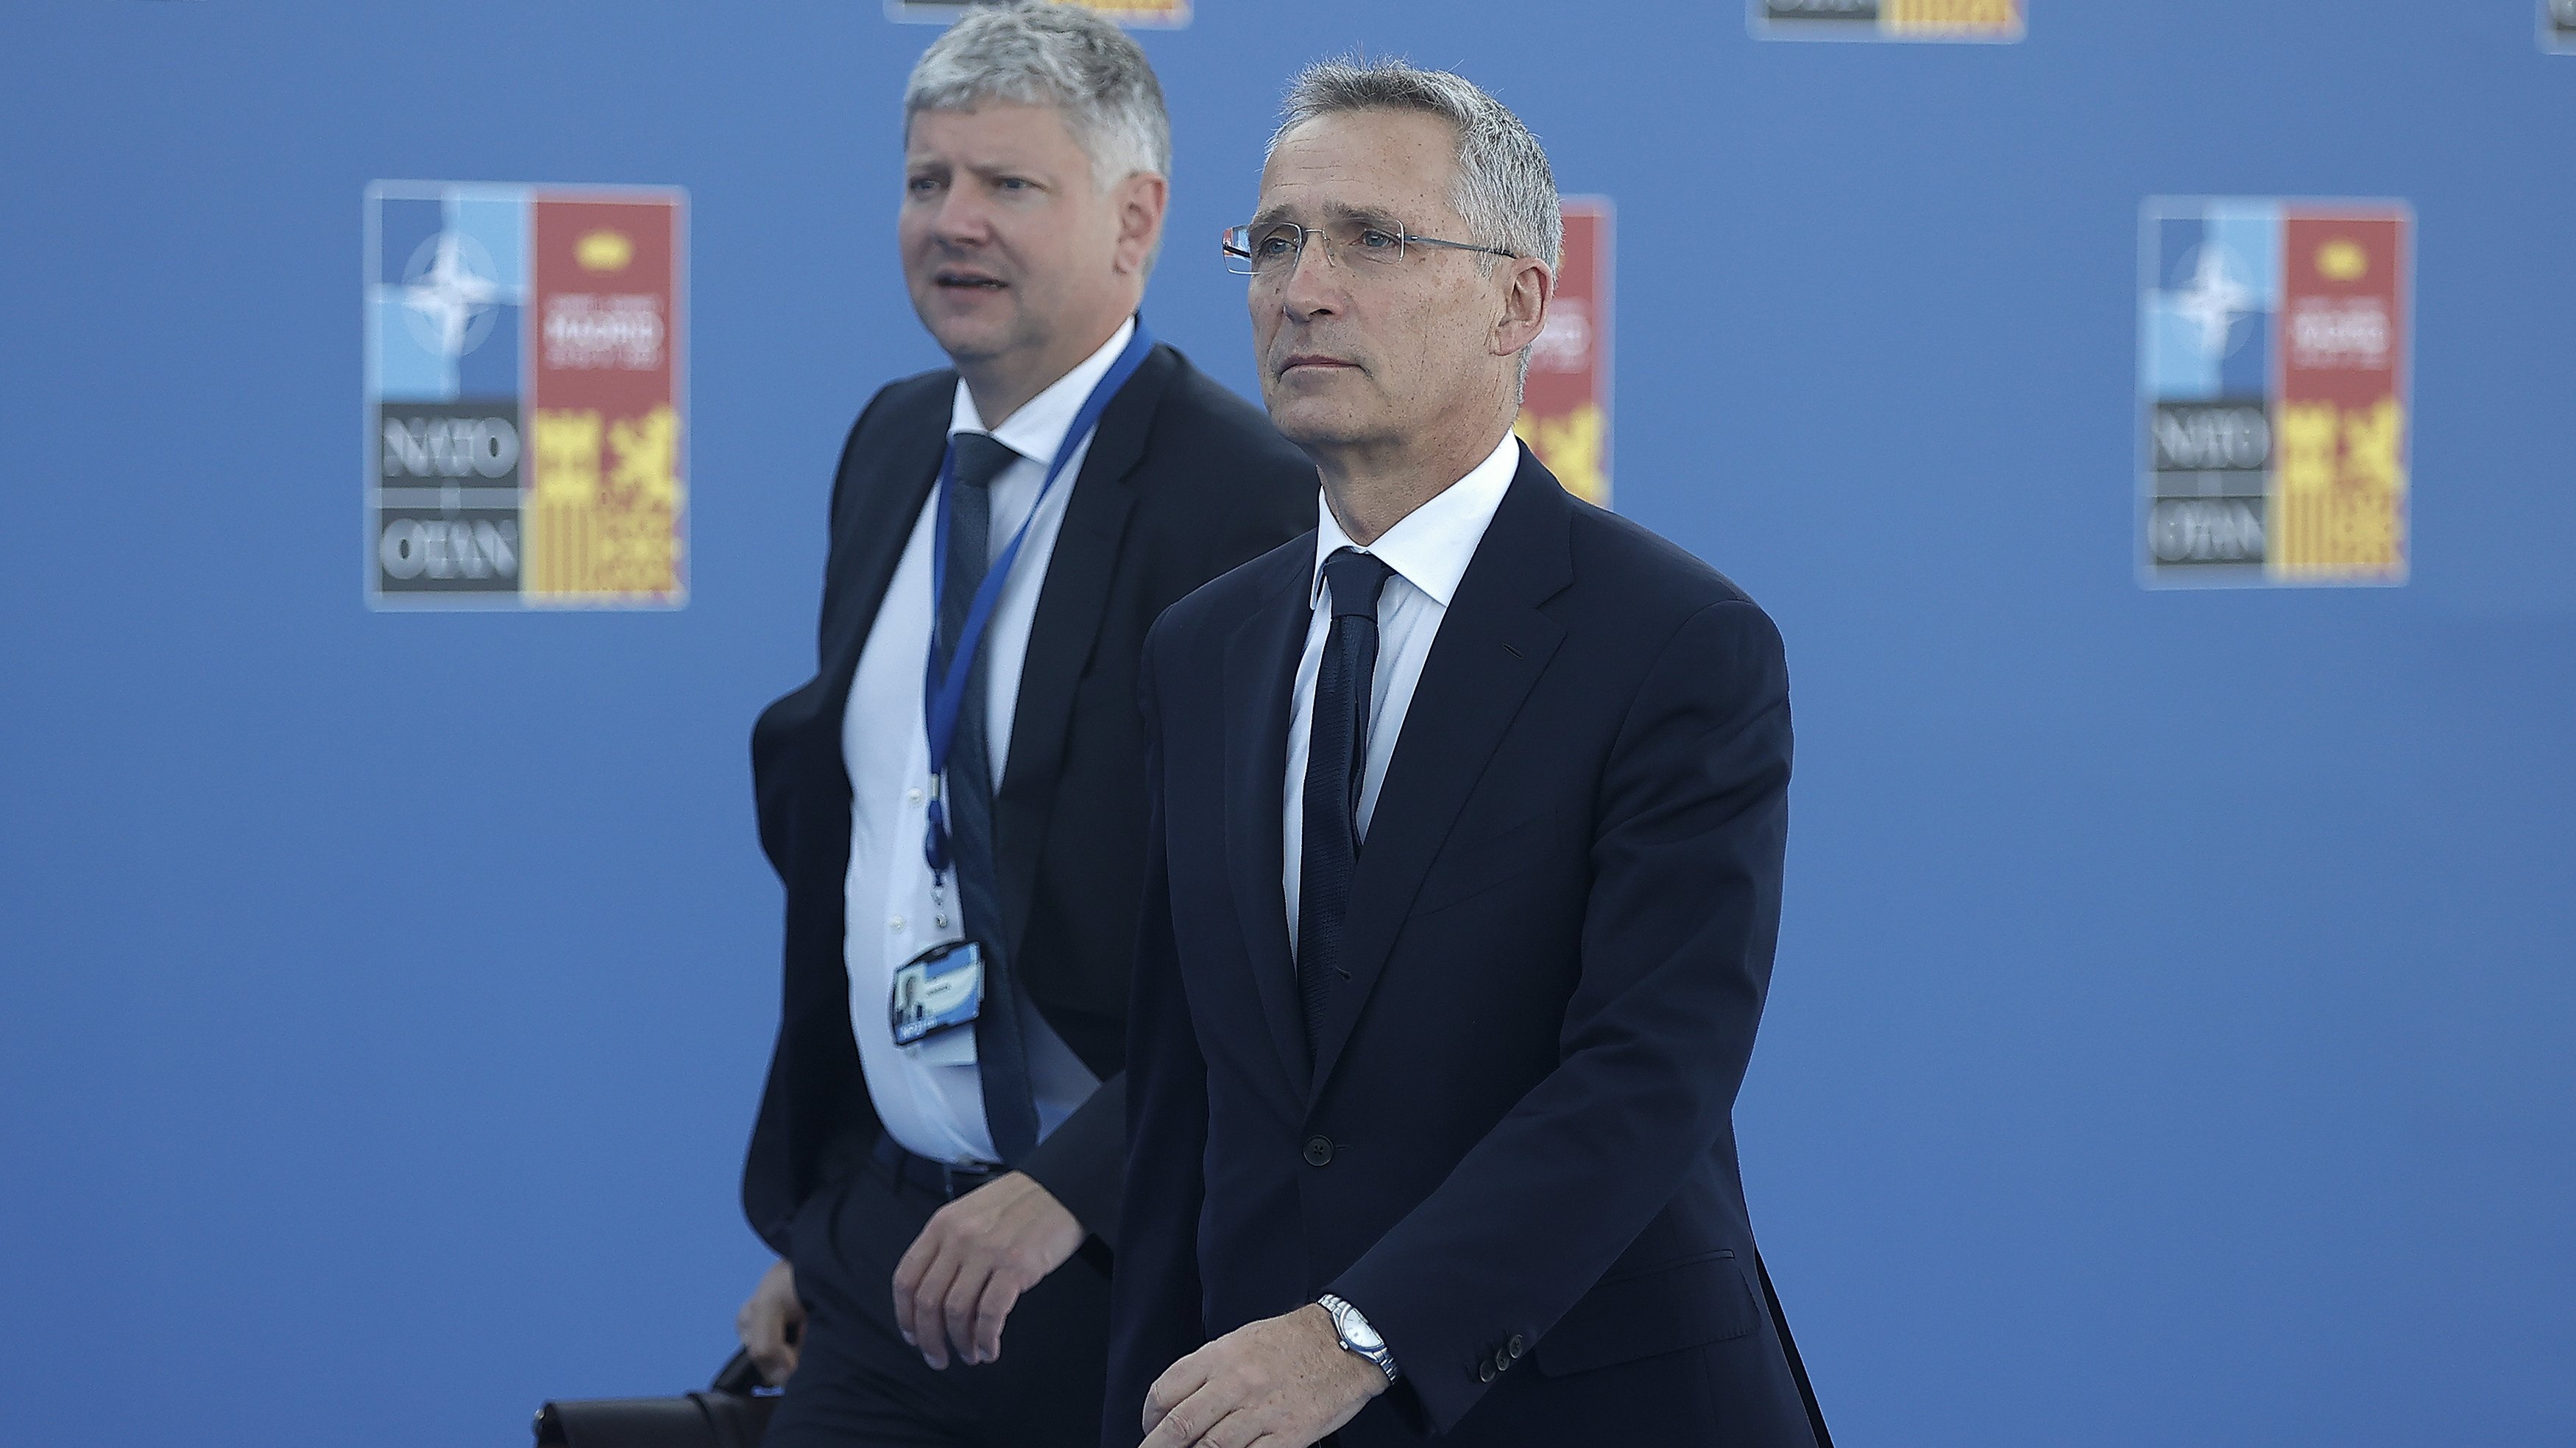 2022 NATO leaders summit in Madrid